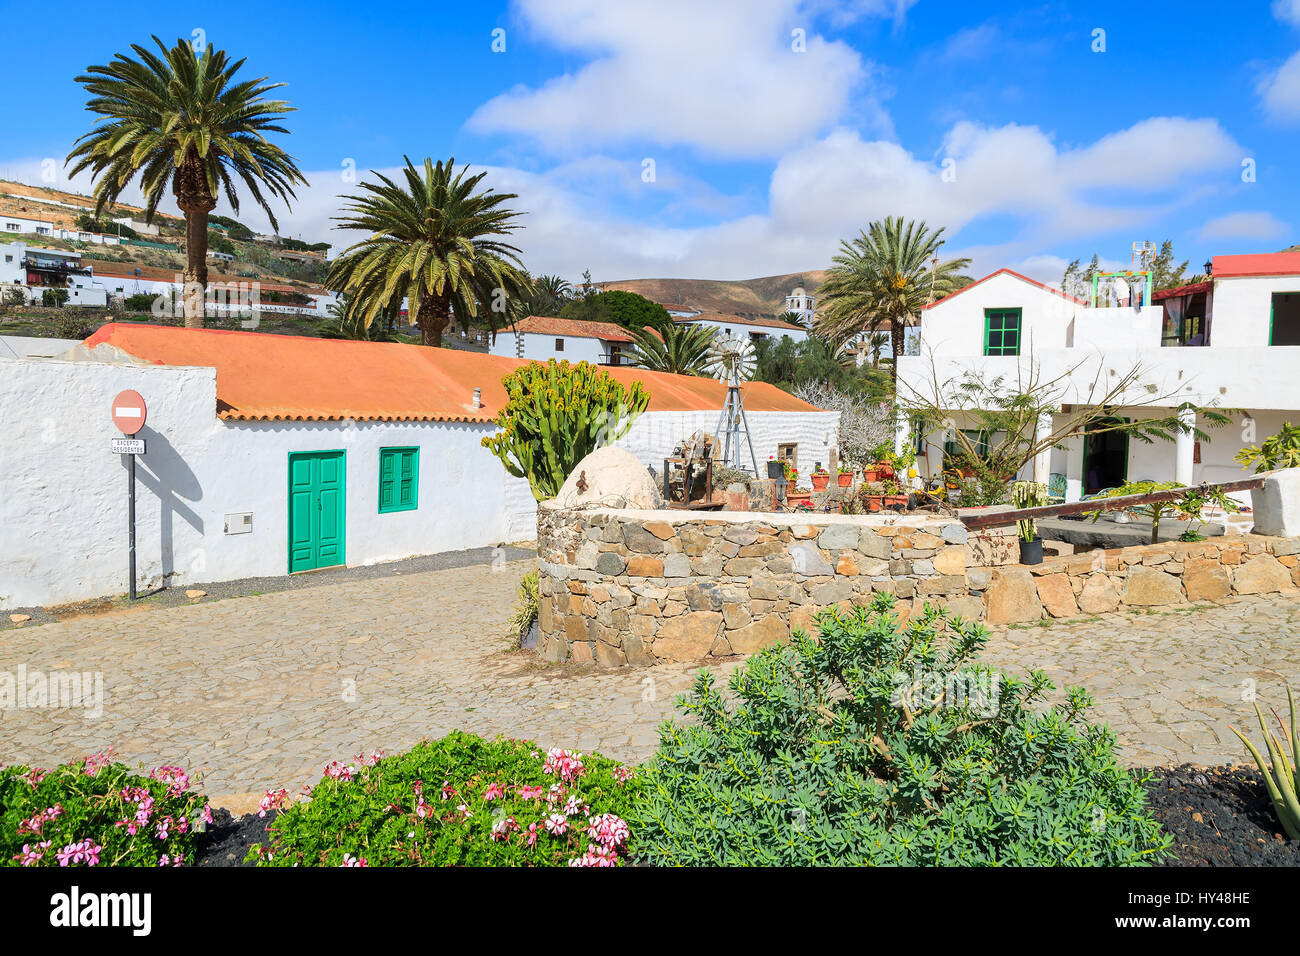 Traditionelles Haus im kanarischen Stil in Betancuria Dorf und Palmen Bäume mit Steinmauer, Fuerteventura, Kanarische Inseln, Spanien Stockfoto